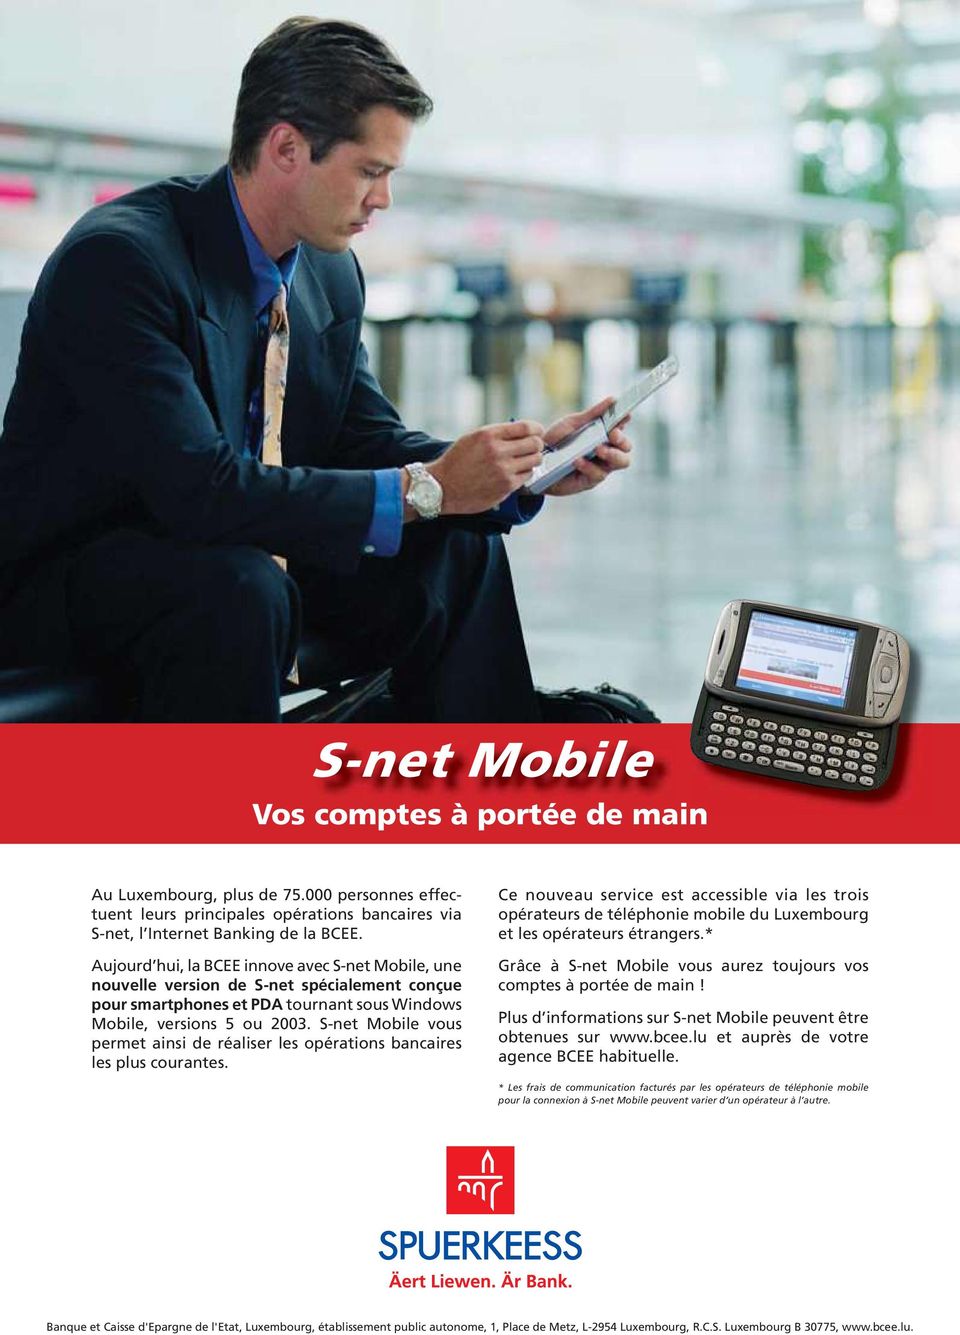 S-net Mobile vous permet ainsi de réaliser les opérations bancaires les plus courantes.